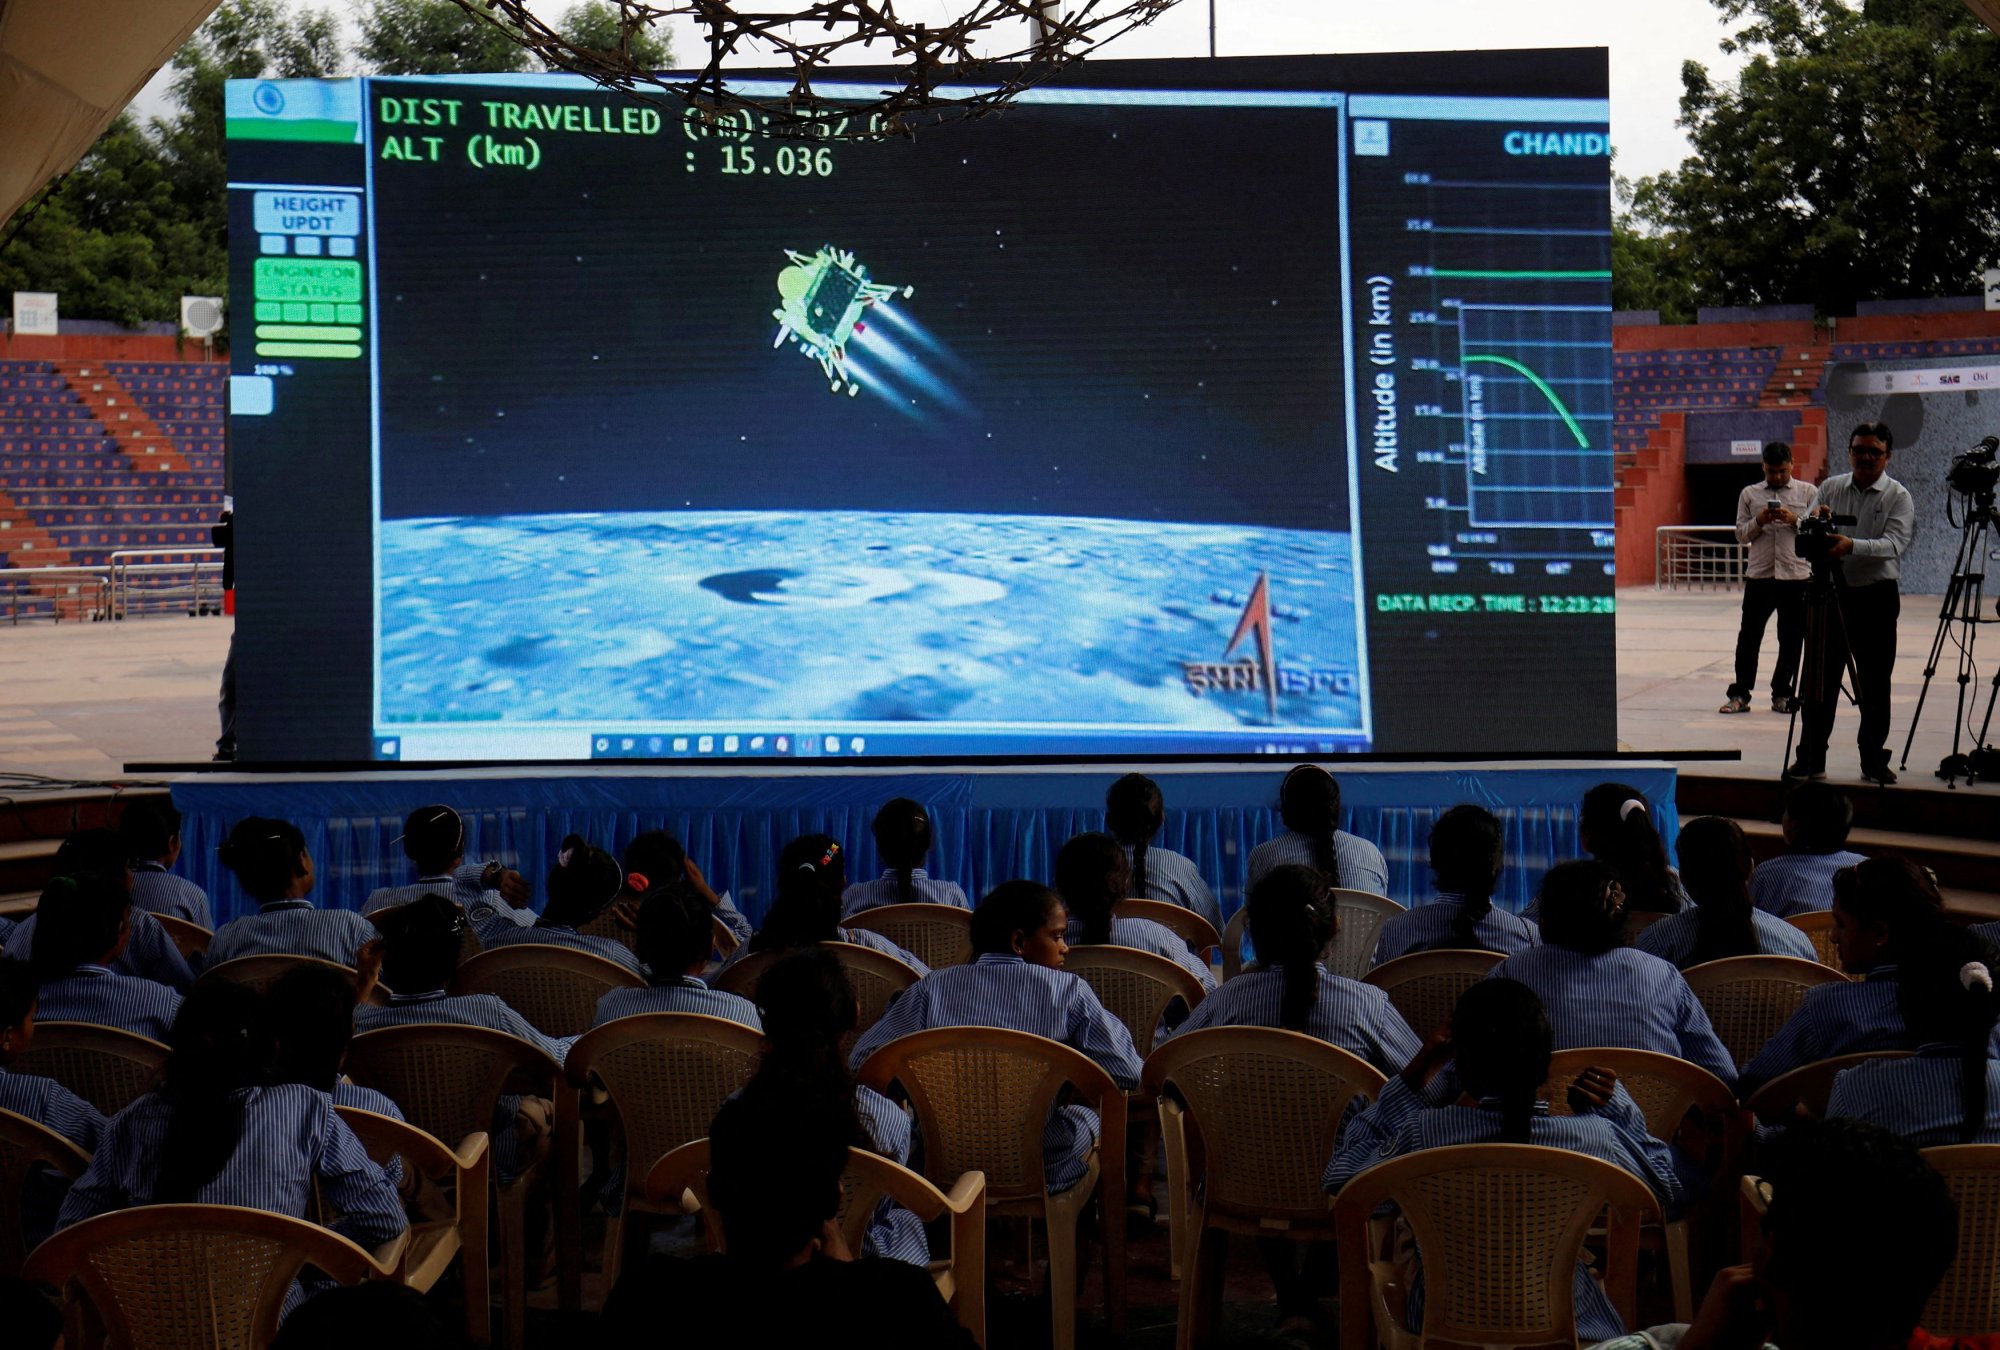 Ινδία: Σε «λειτουργία αναμονής» το διαστημικό όχημα που έστειλε στη σελήνη – Αποστολή εξετελέσθη